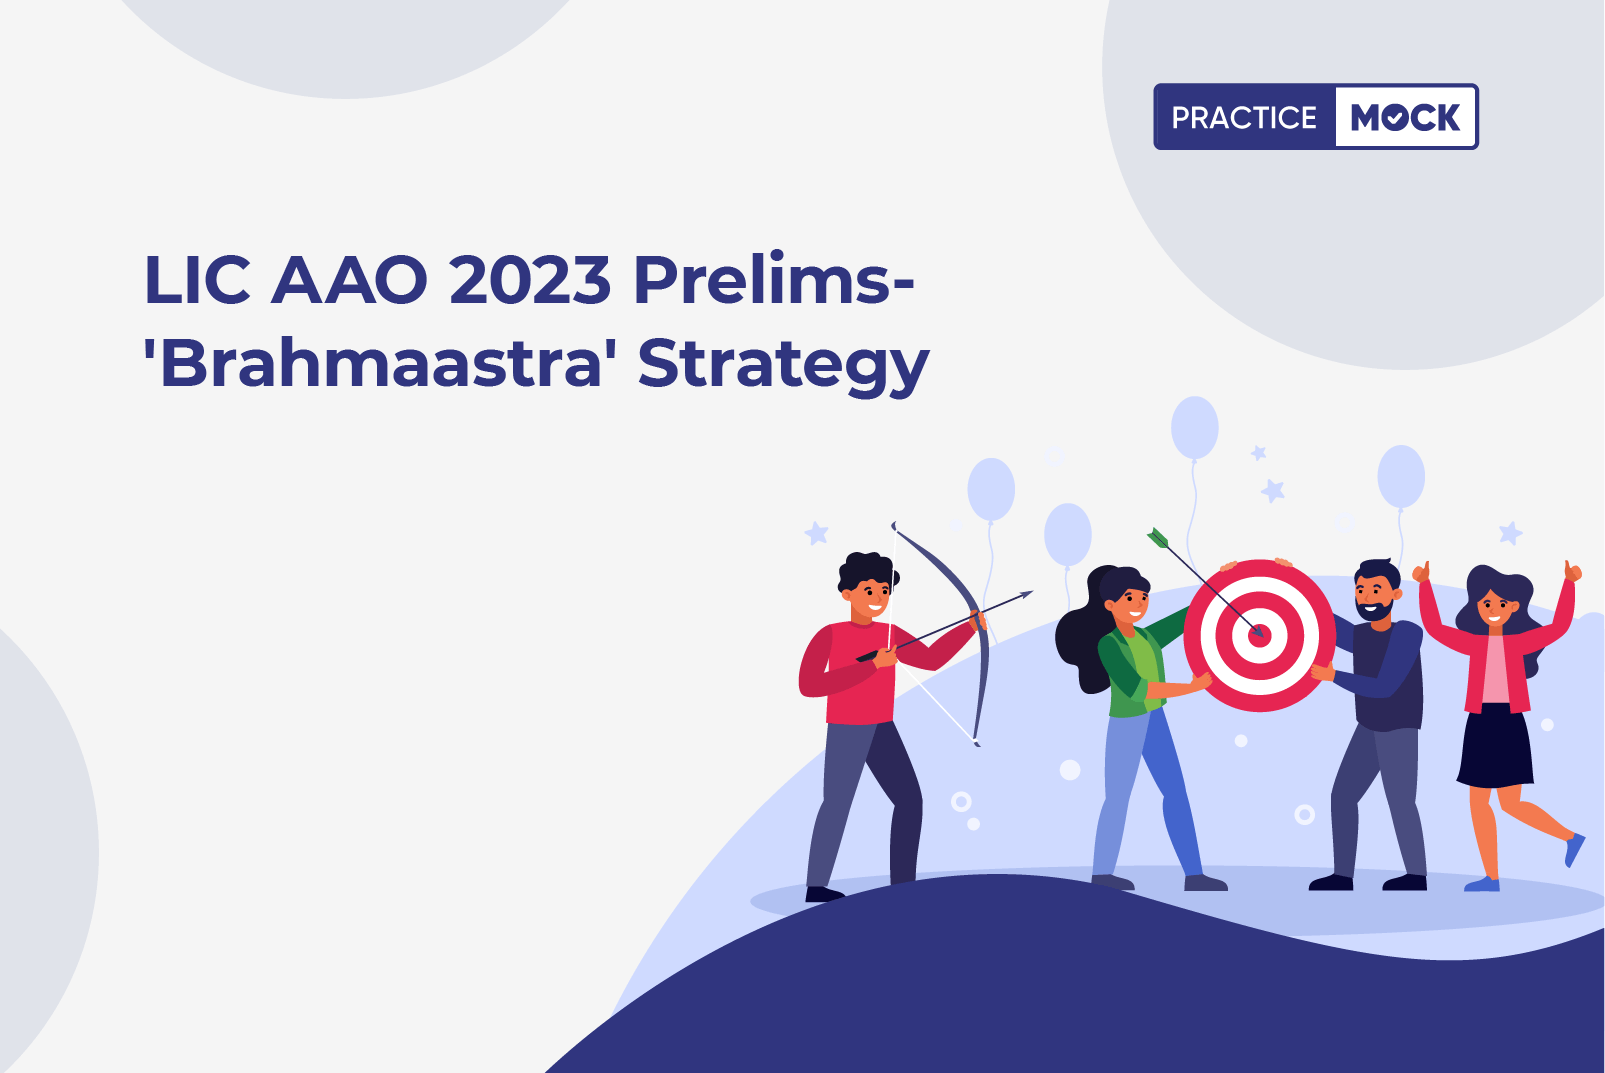 LIC AAO 2023 Prelims- 'Brahmaastra' Strategy